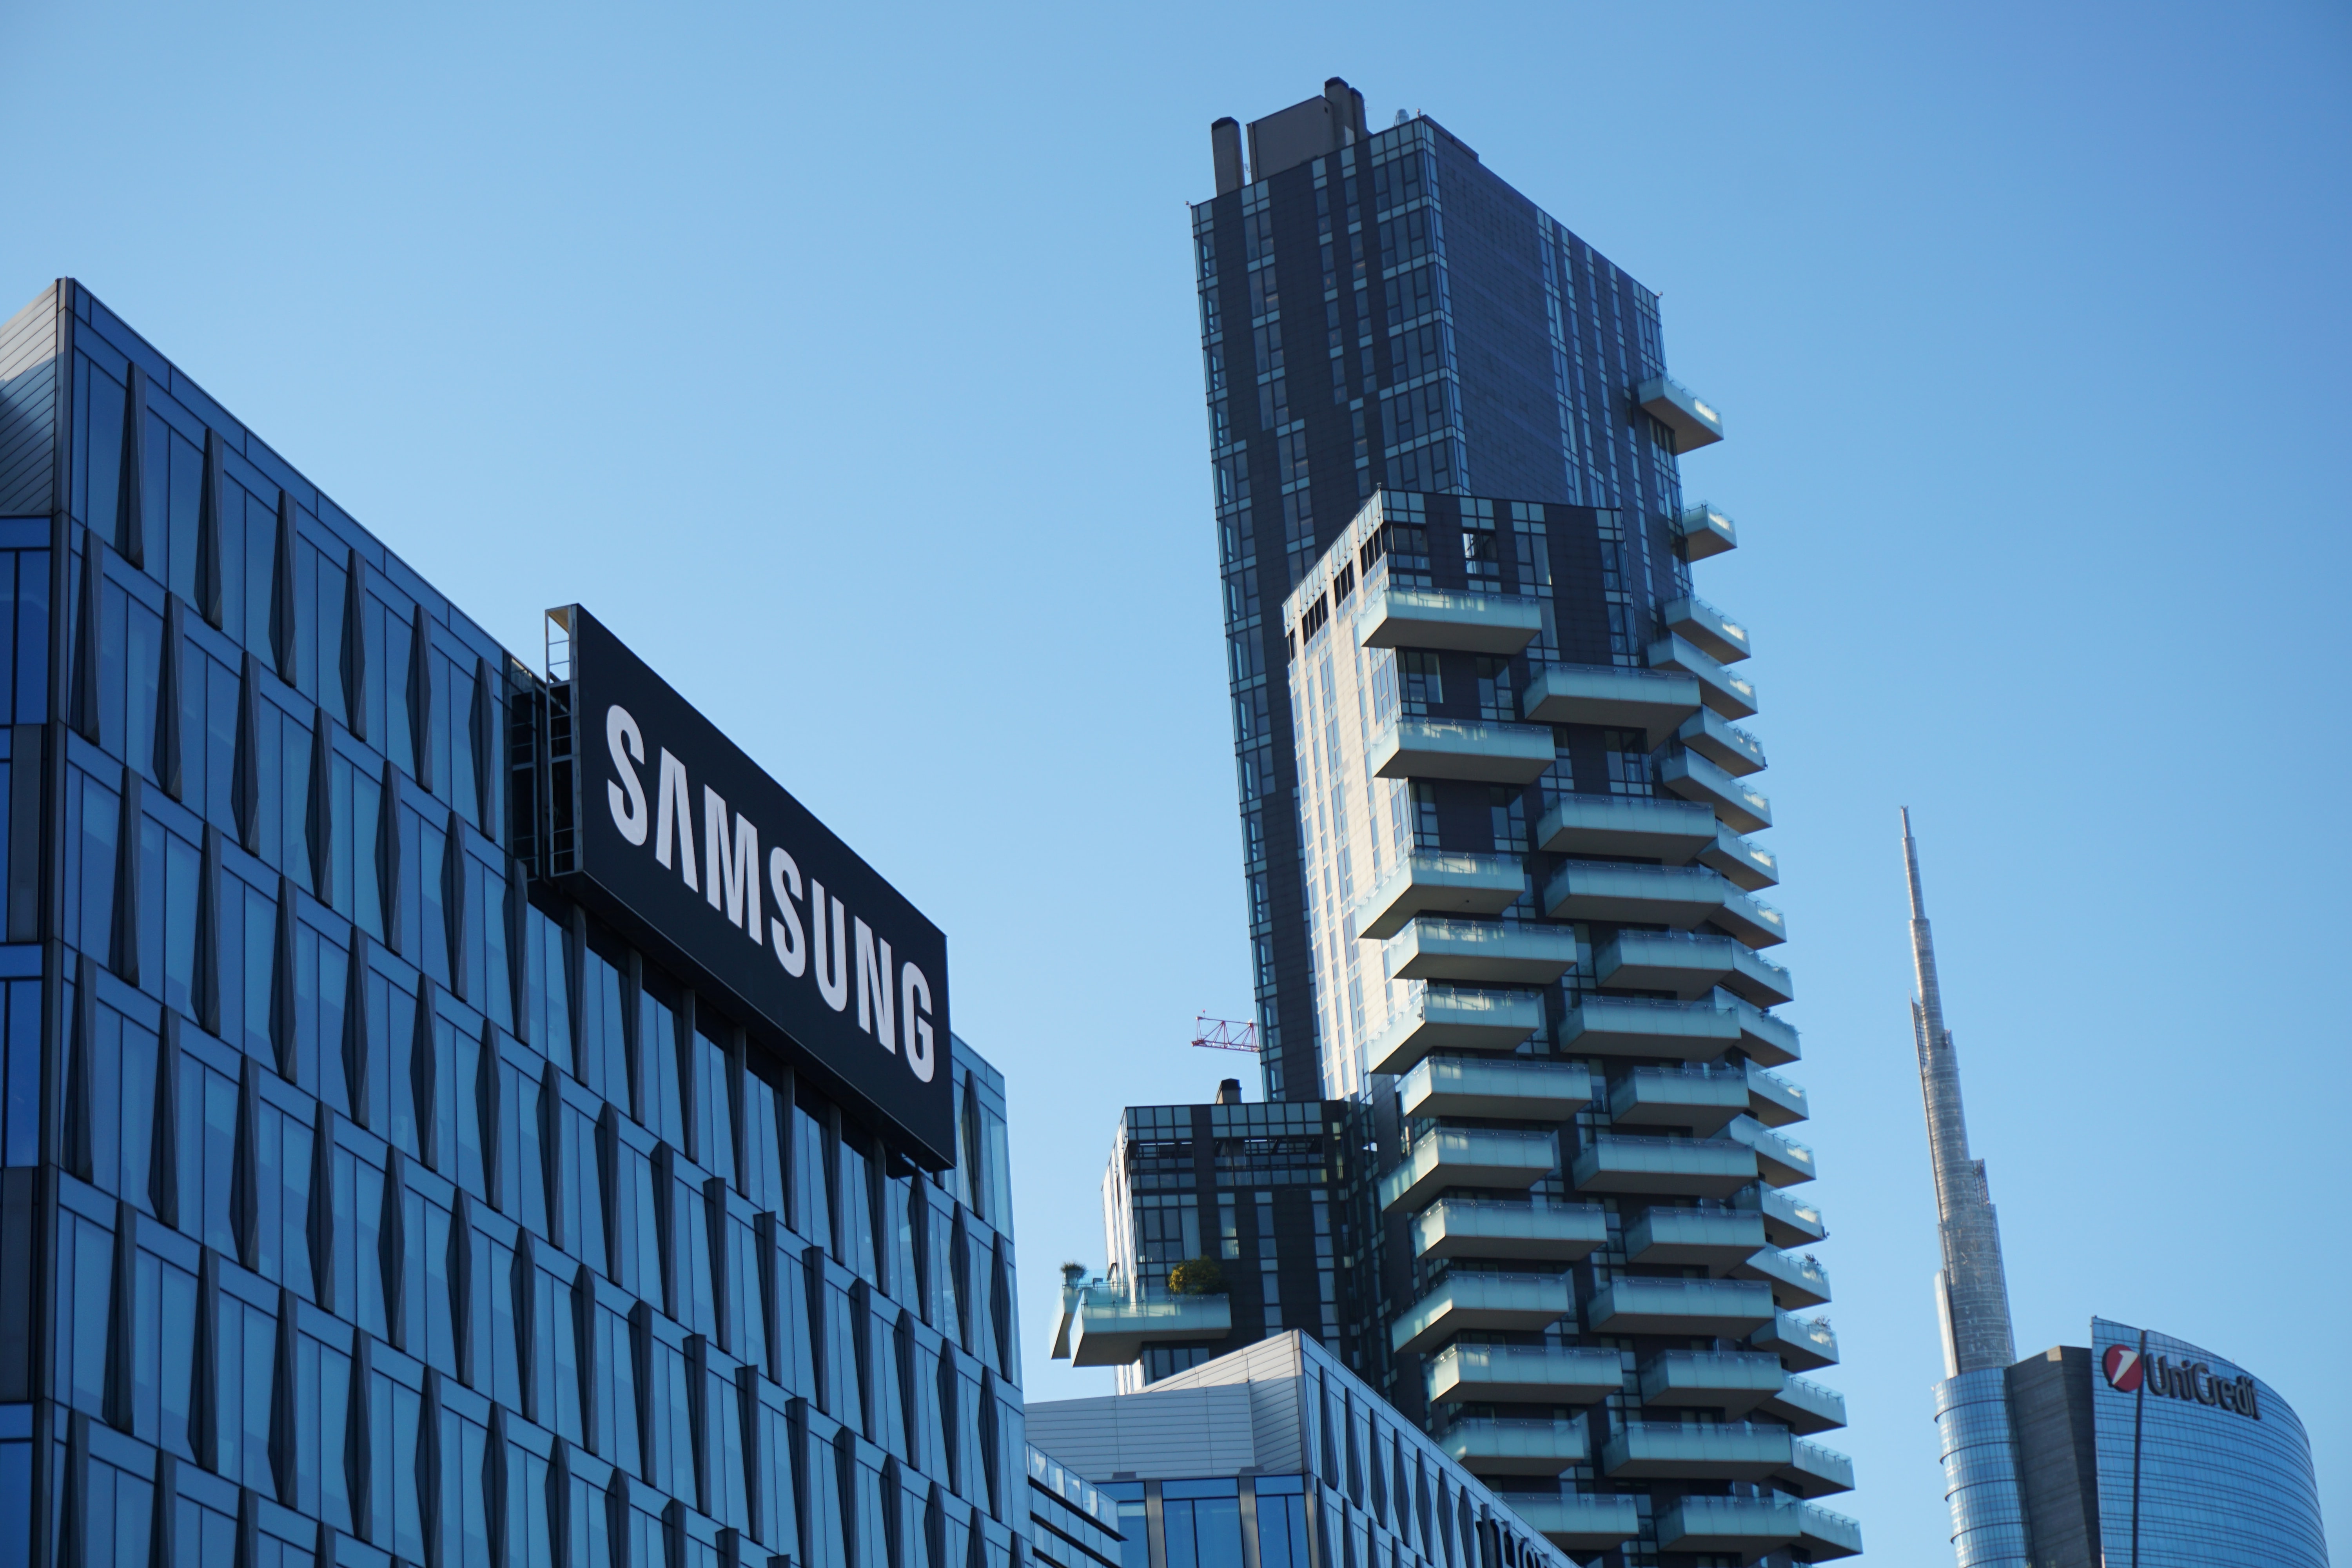 Co vyrábí firma Samsung?